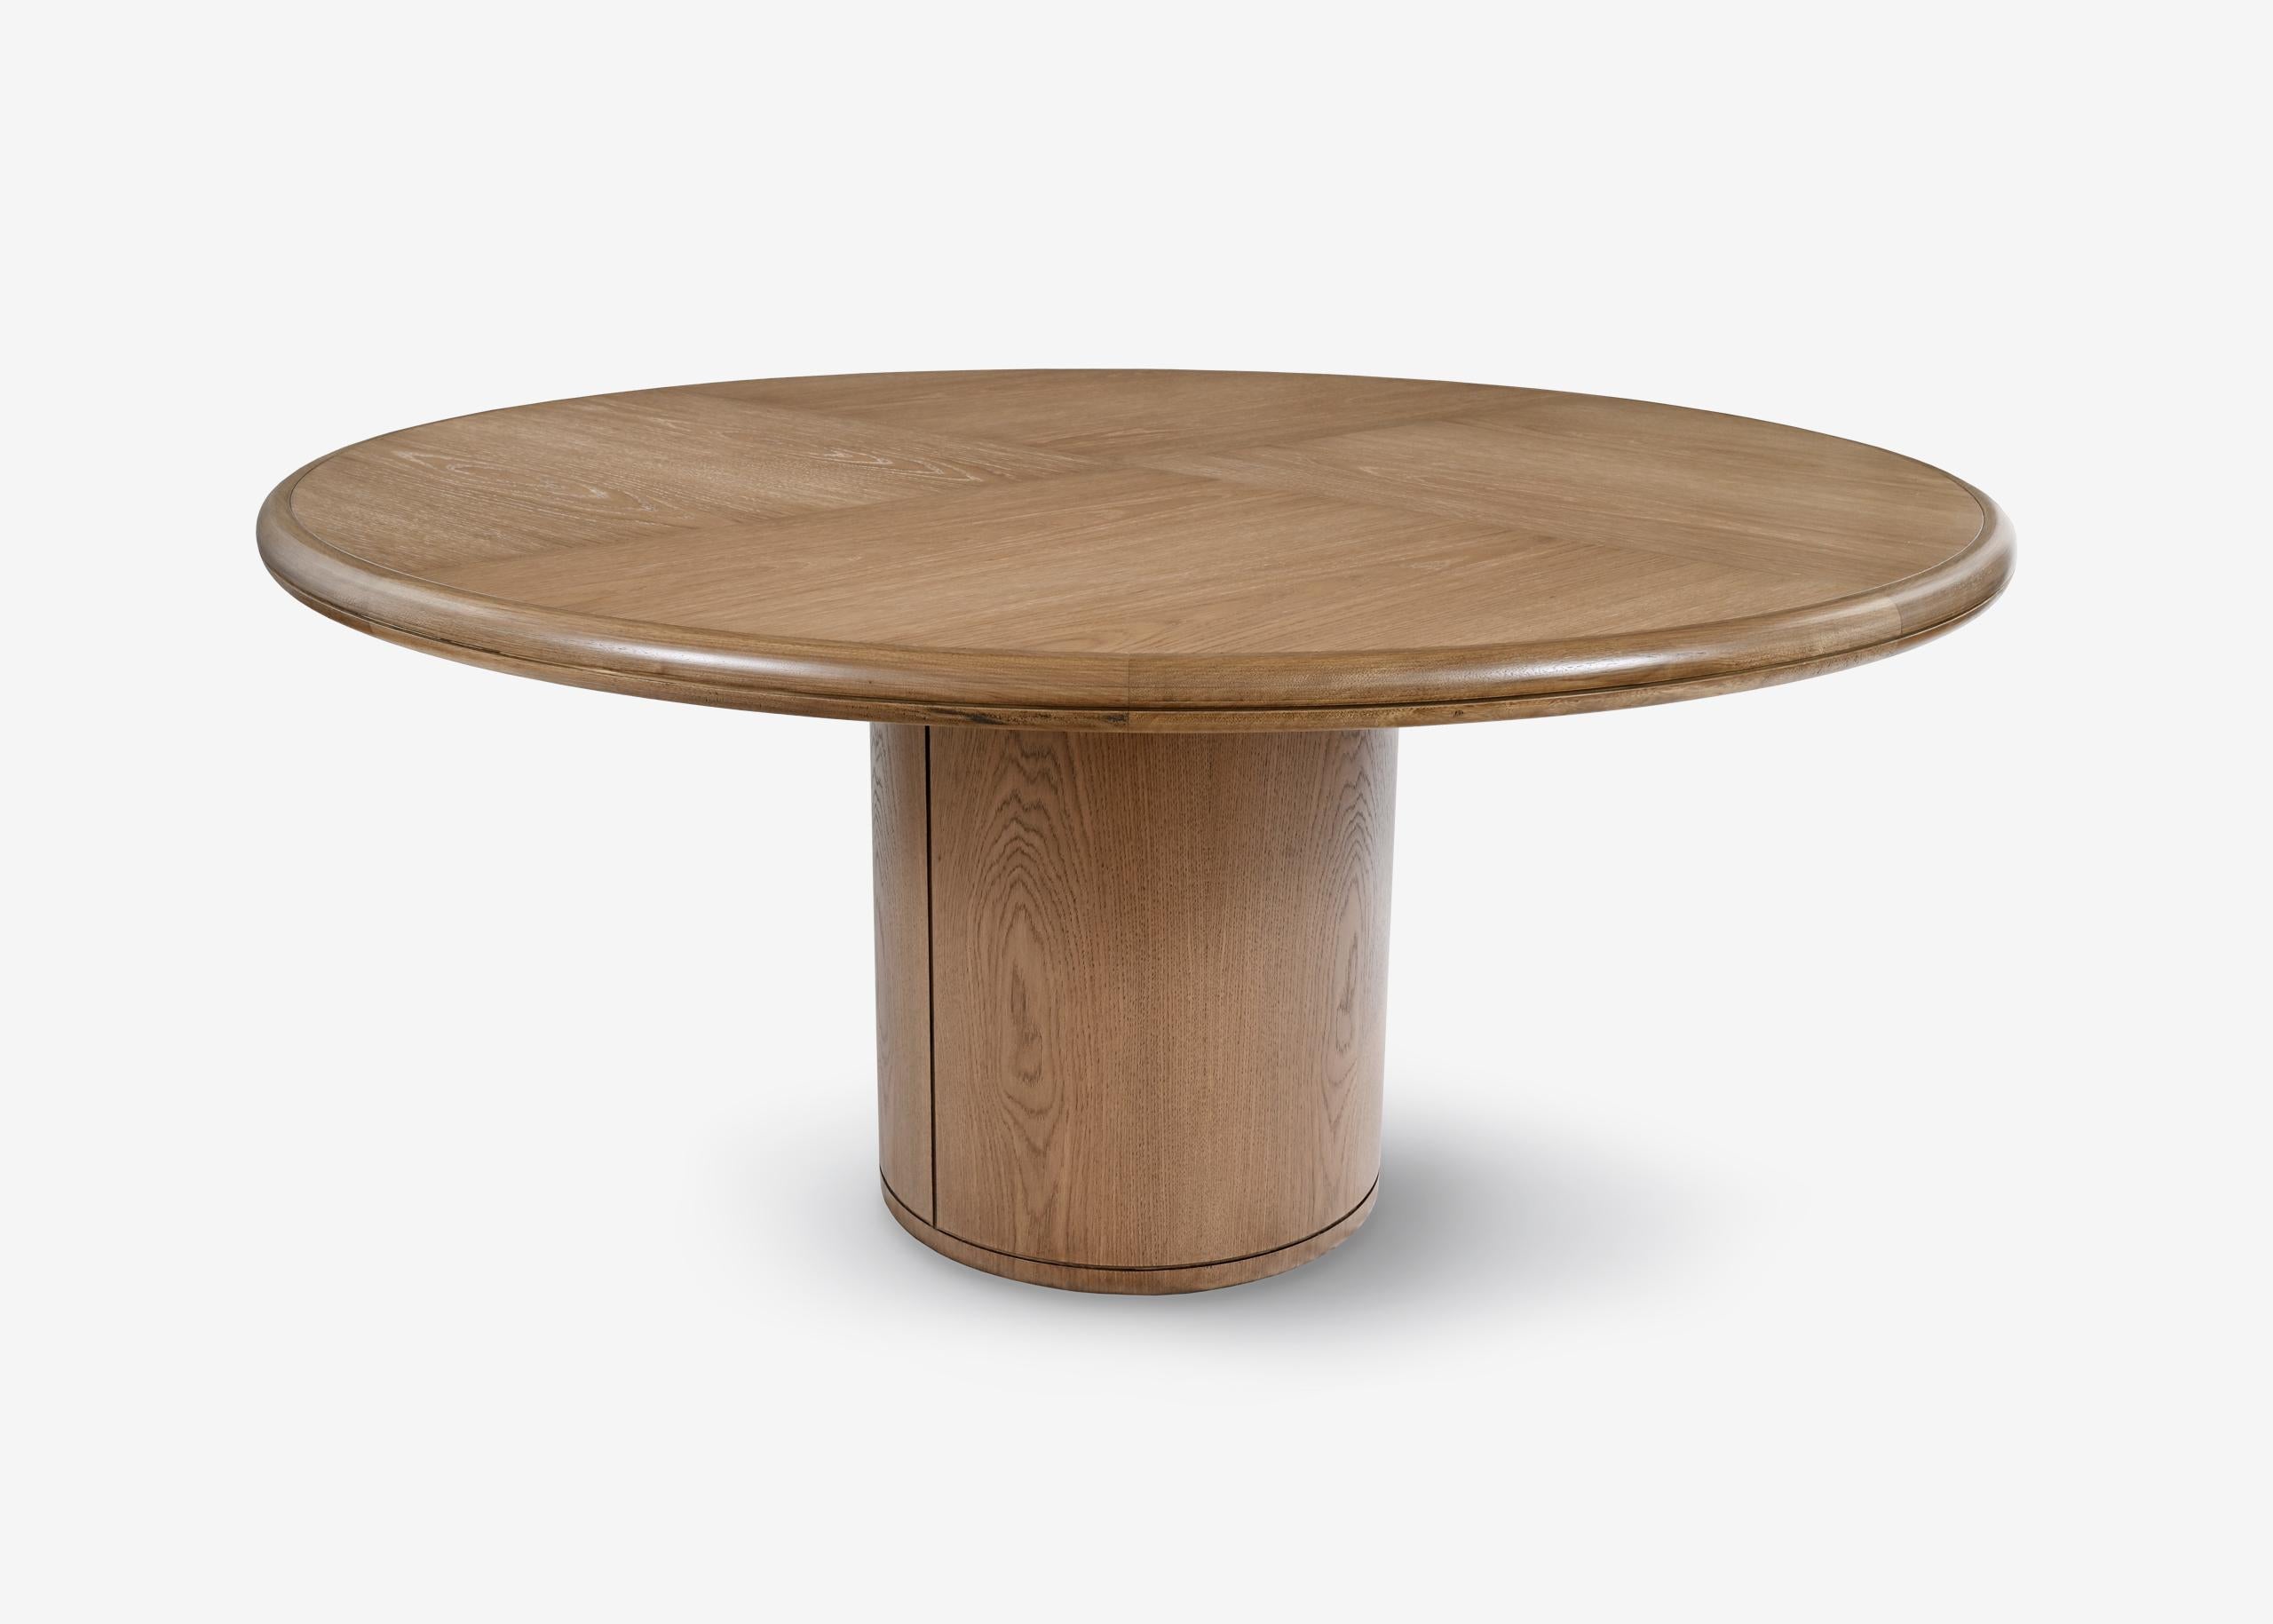 MOON
Table à manger ronde en chêne naturel brossé.
Disponible en différentes dimensions.

Conçu par Buket Hoscan Bazman